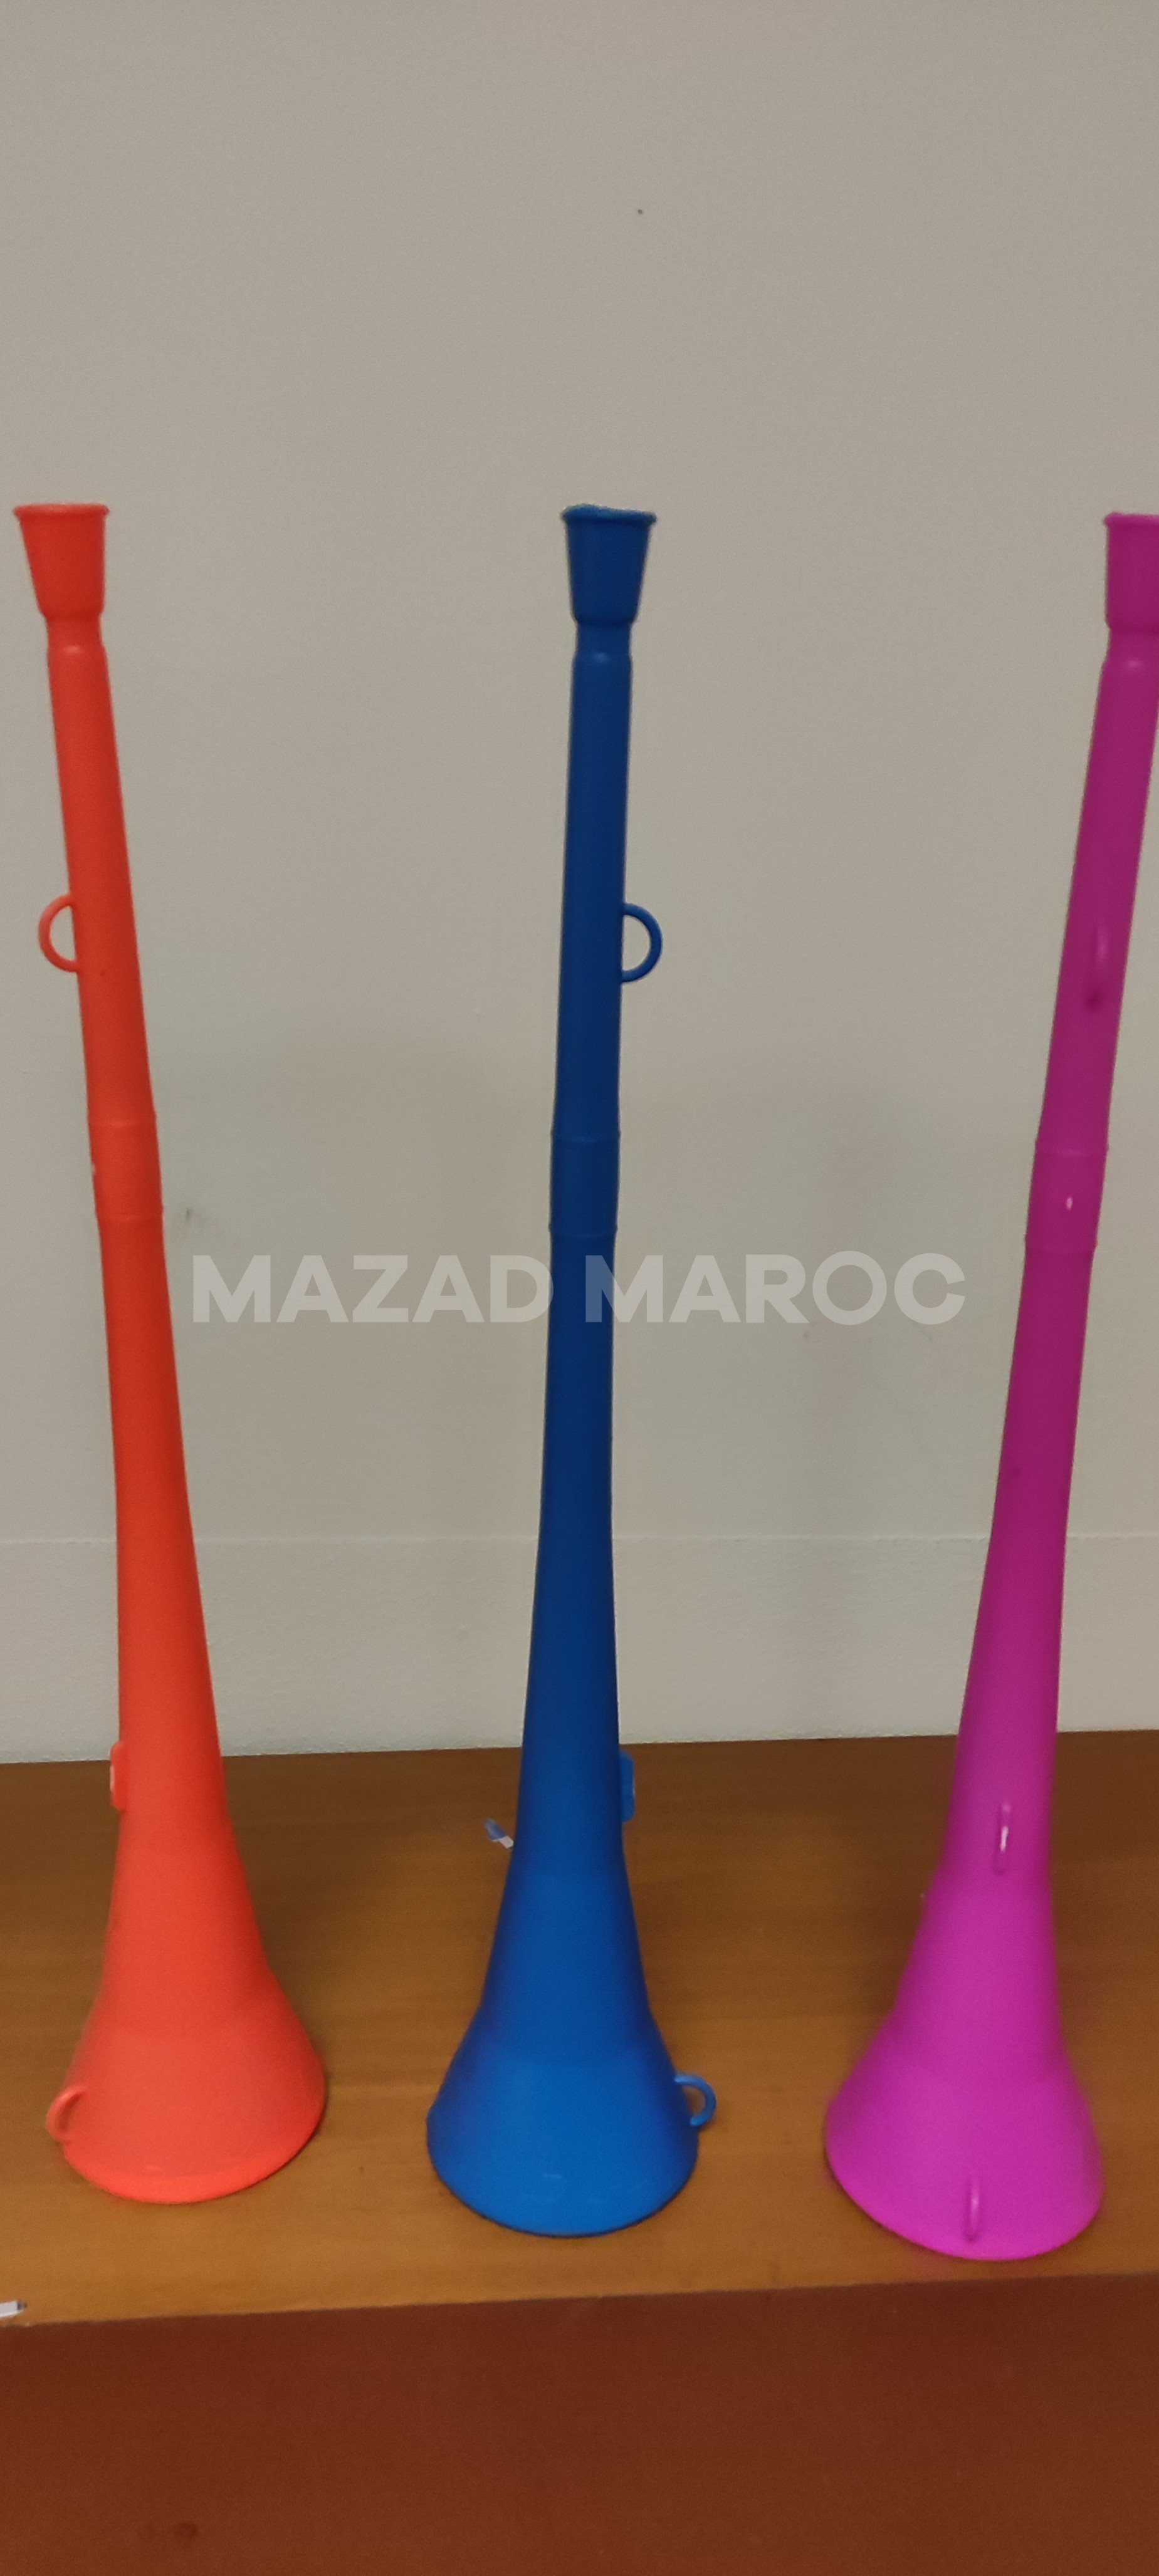 Vuvuzelas Authentiques pour Ambiance Festive !